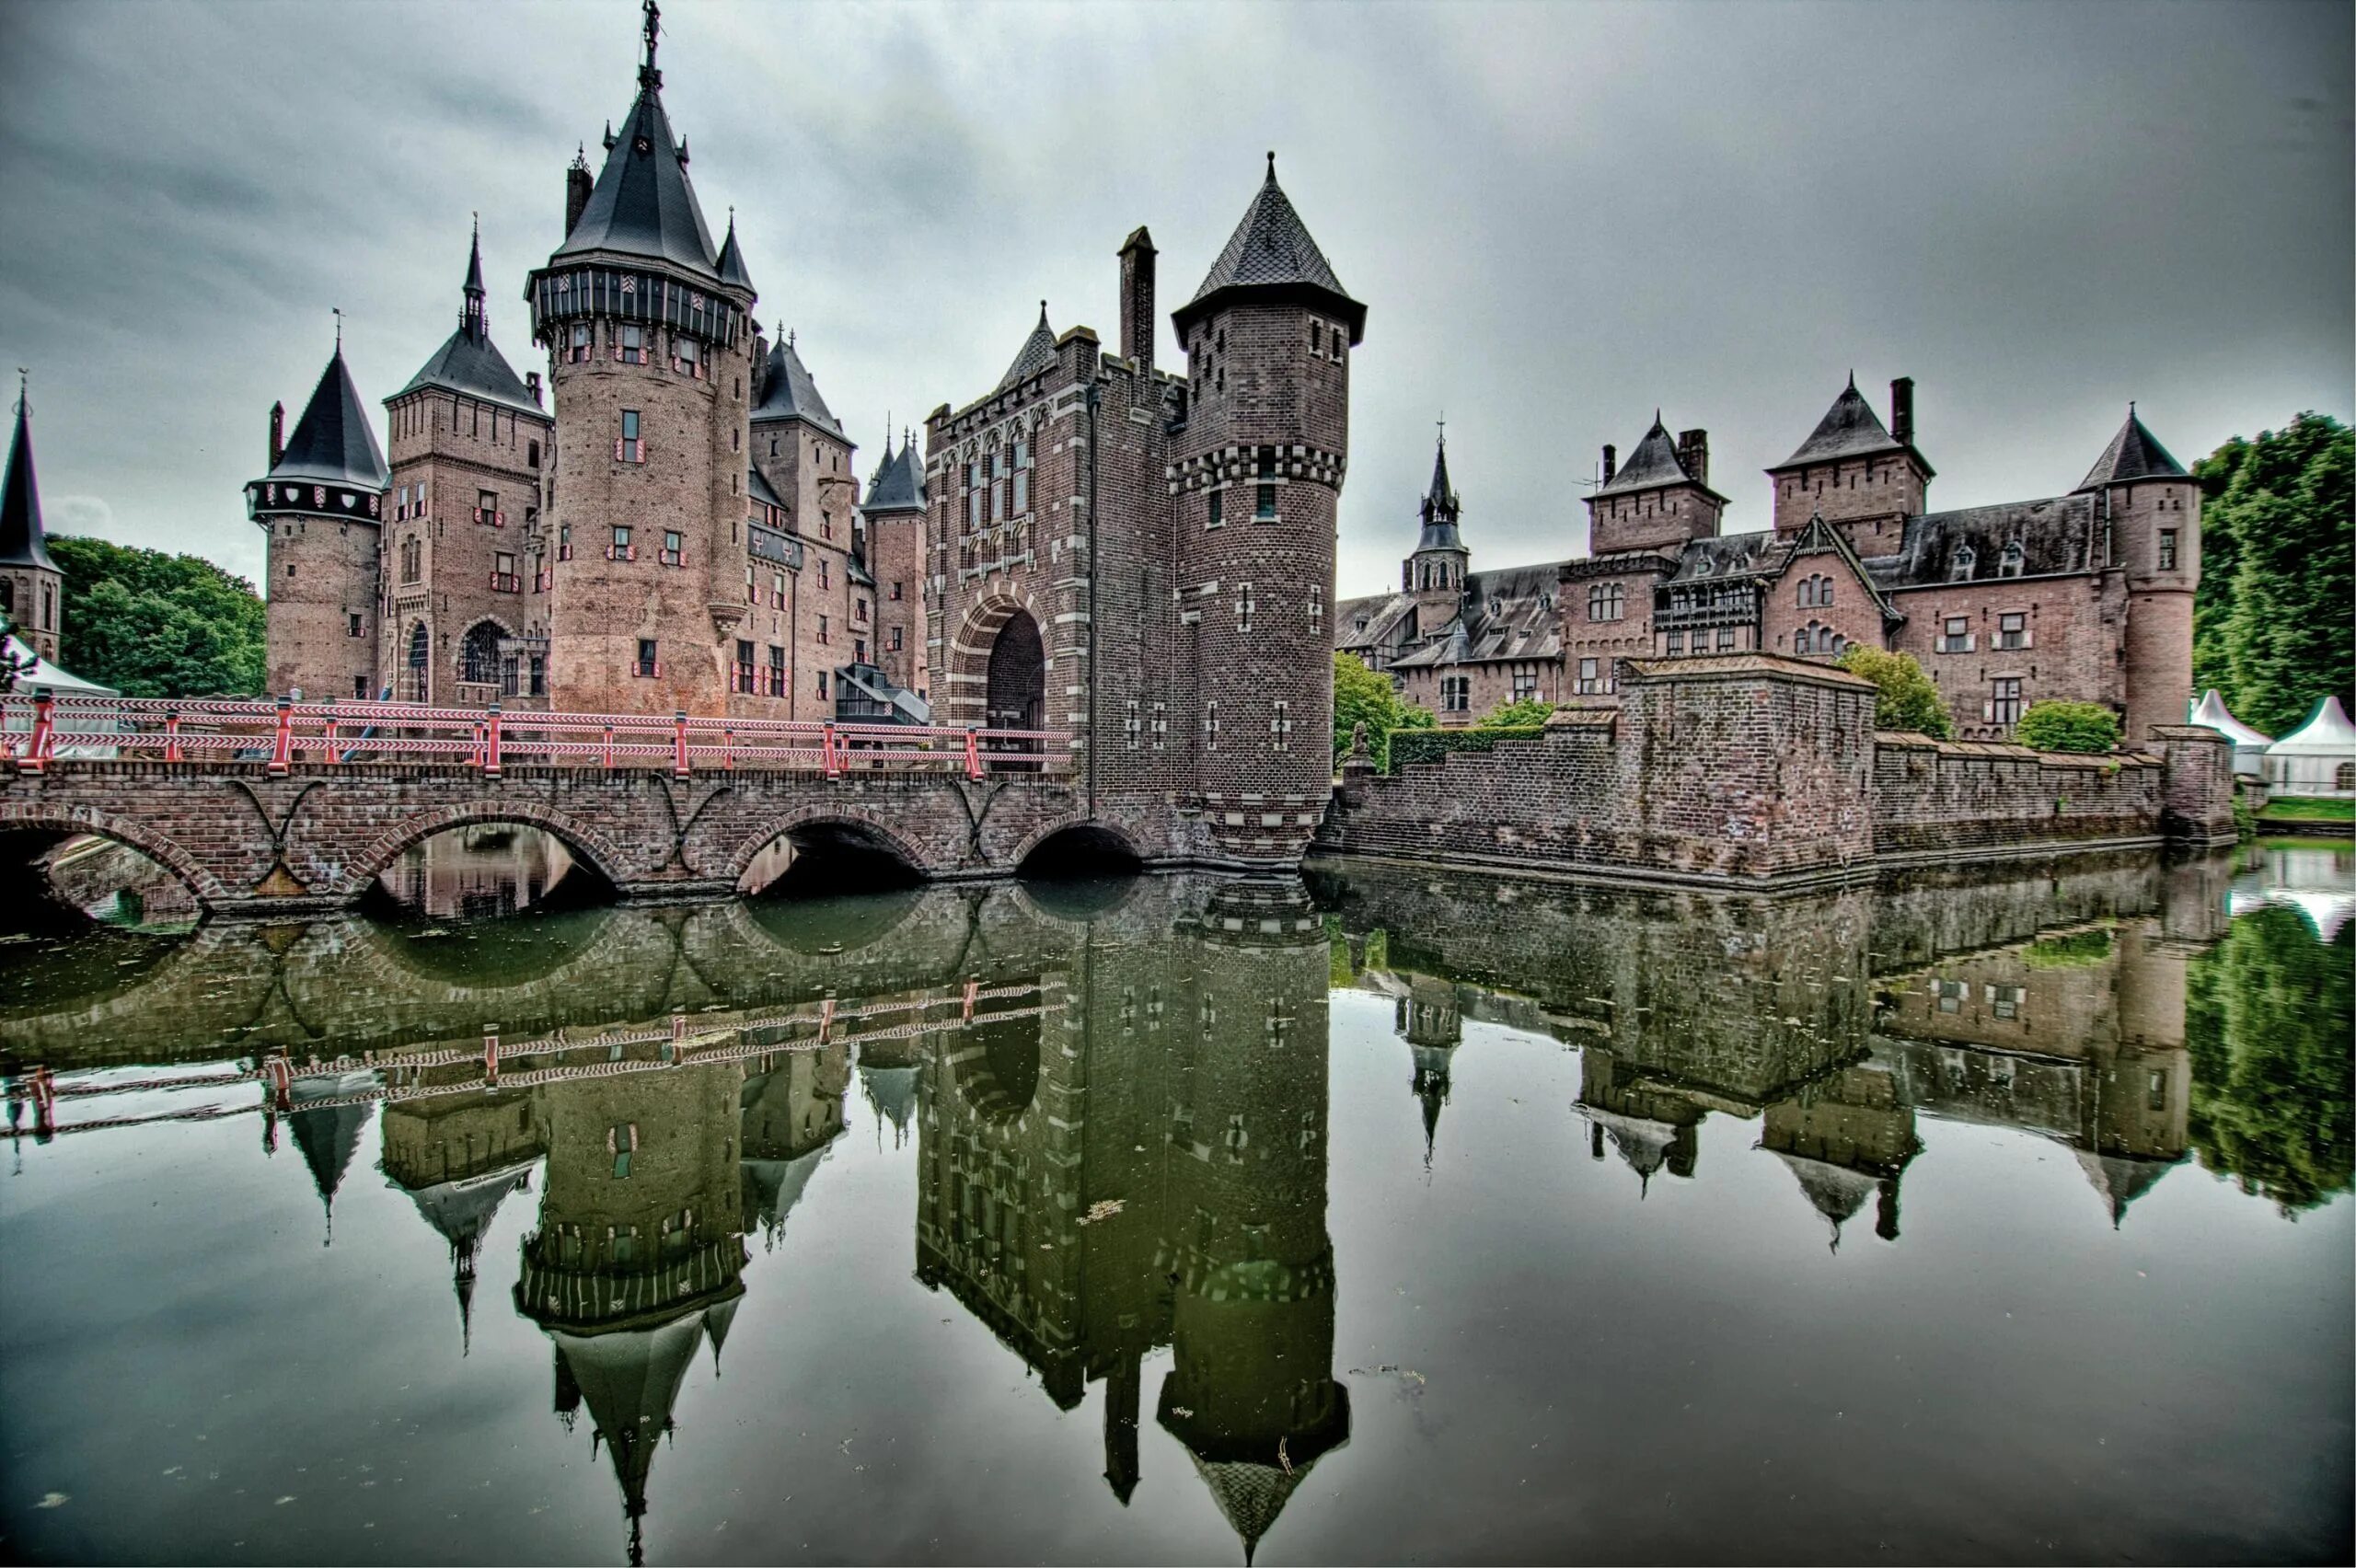 Замок в Голландии де Хаар. Замок де Хаар Утрехт. Де Хаар, Утрехт, Нидерланды. Замок де Хаар Нидерланды фото.